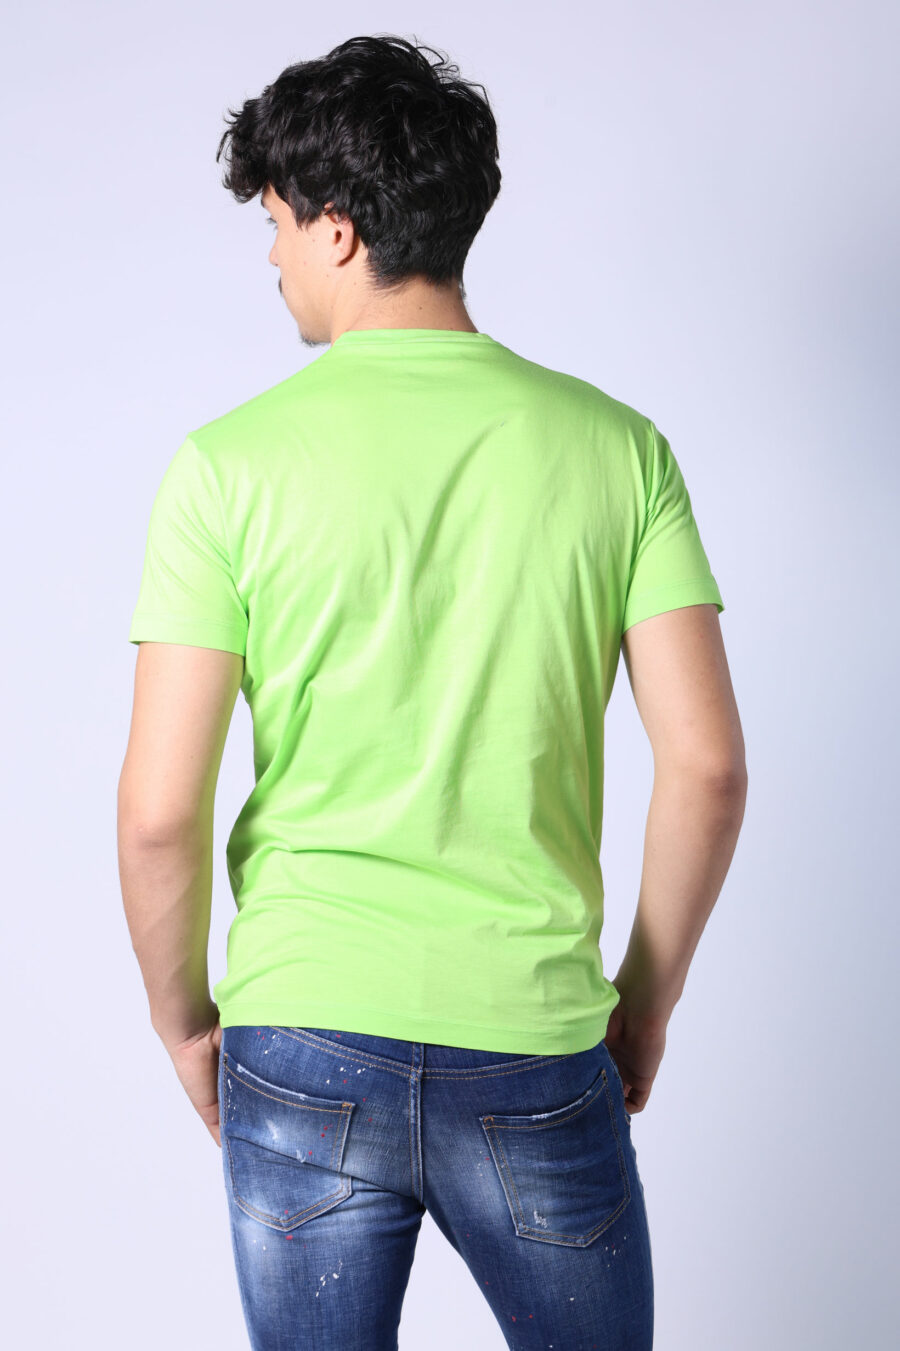 Camiseta verde lima con maxilogo "icon" negro - Untitled Catalog 05397